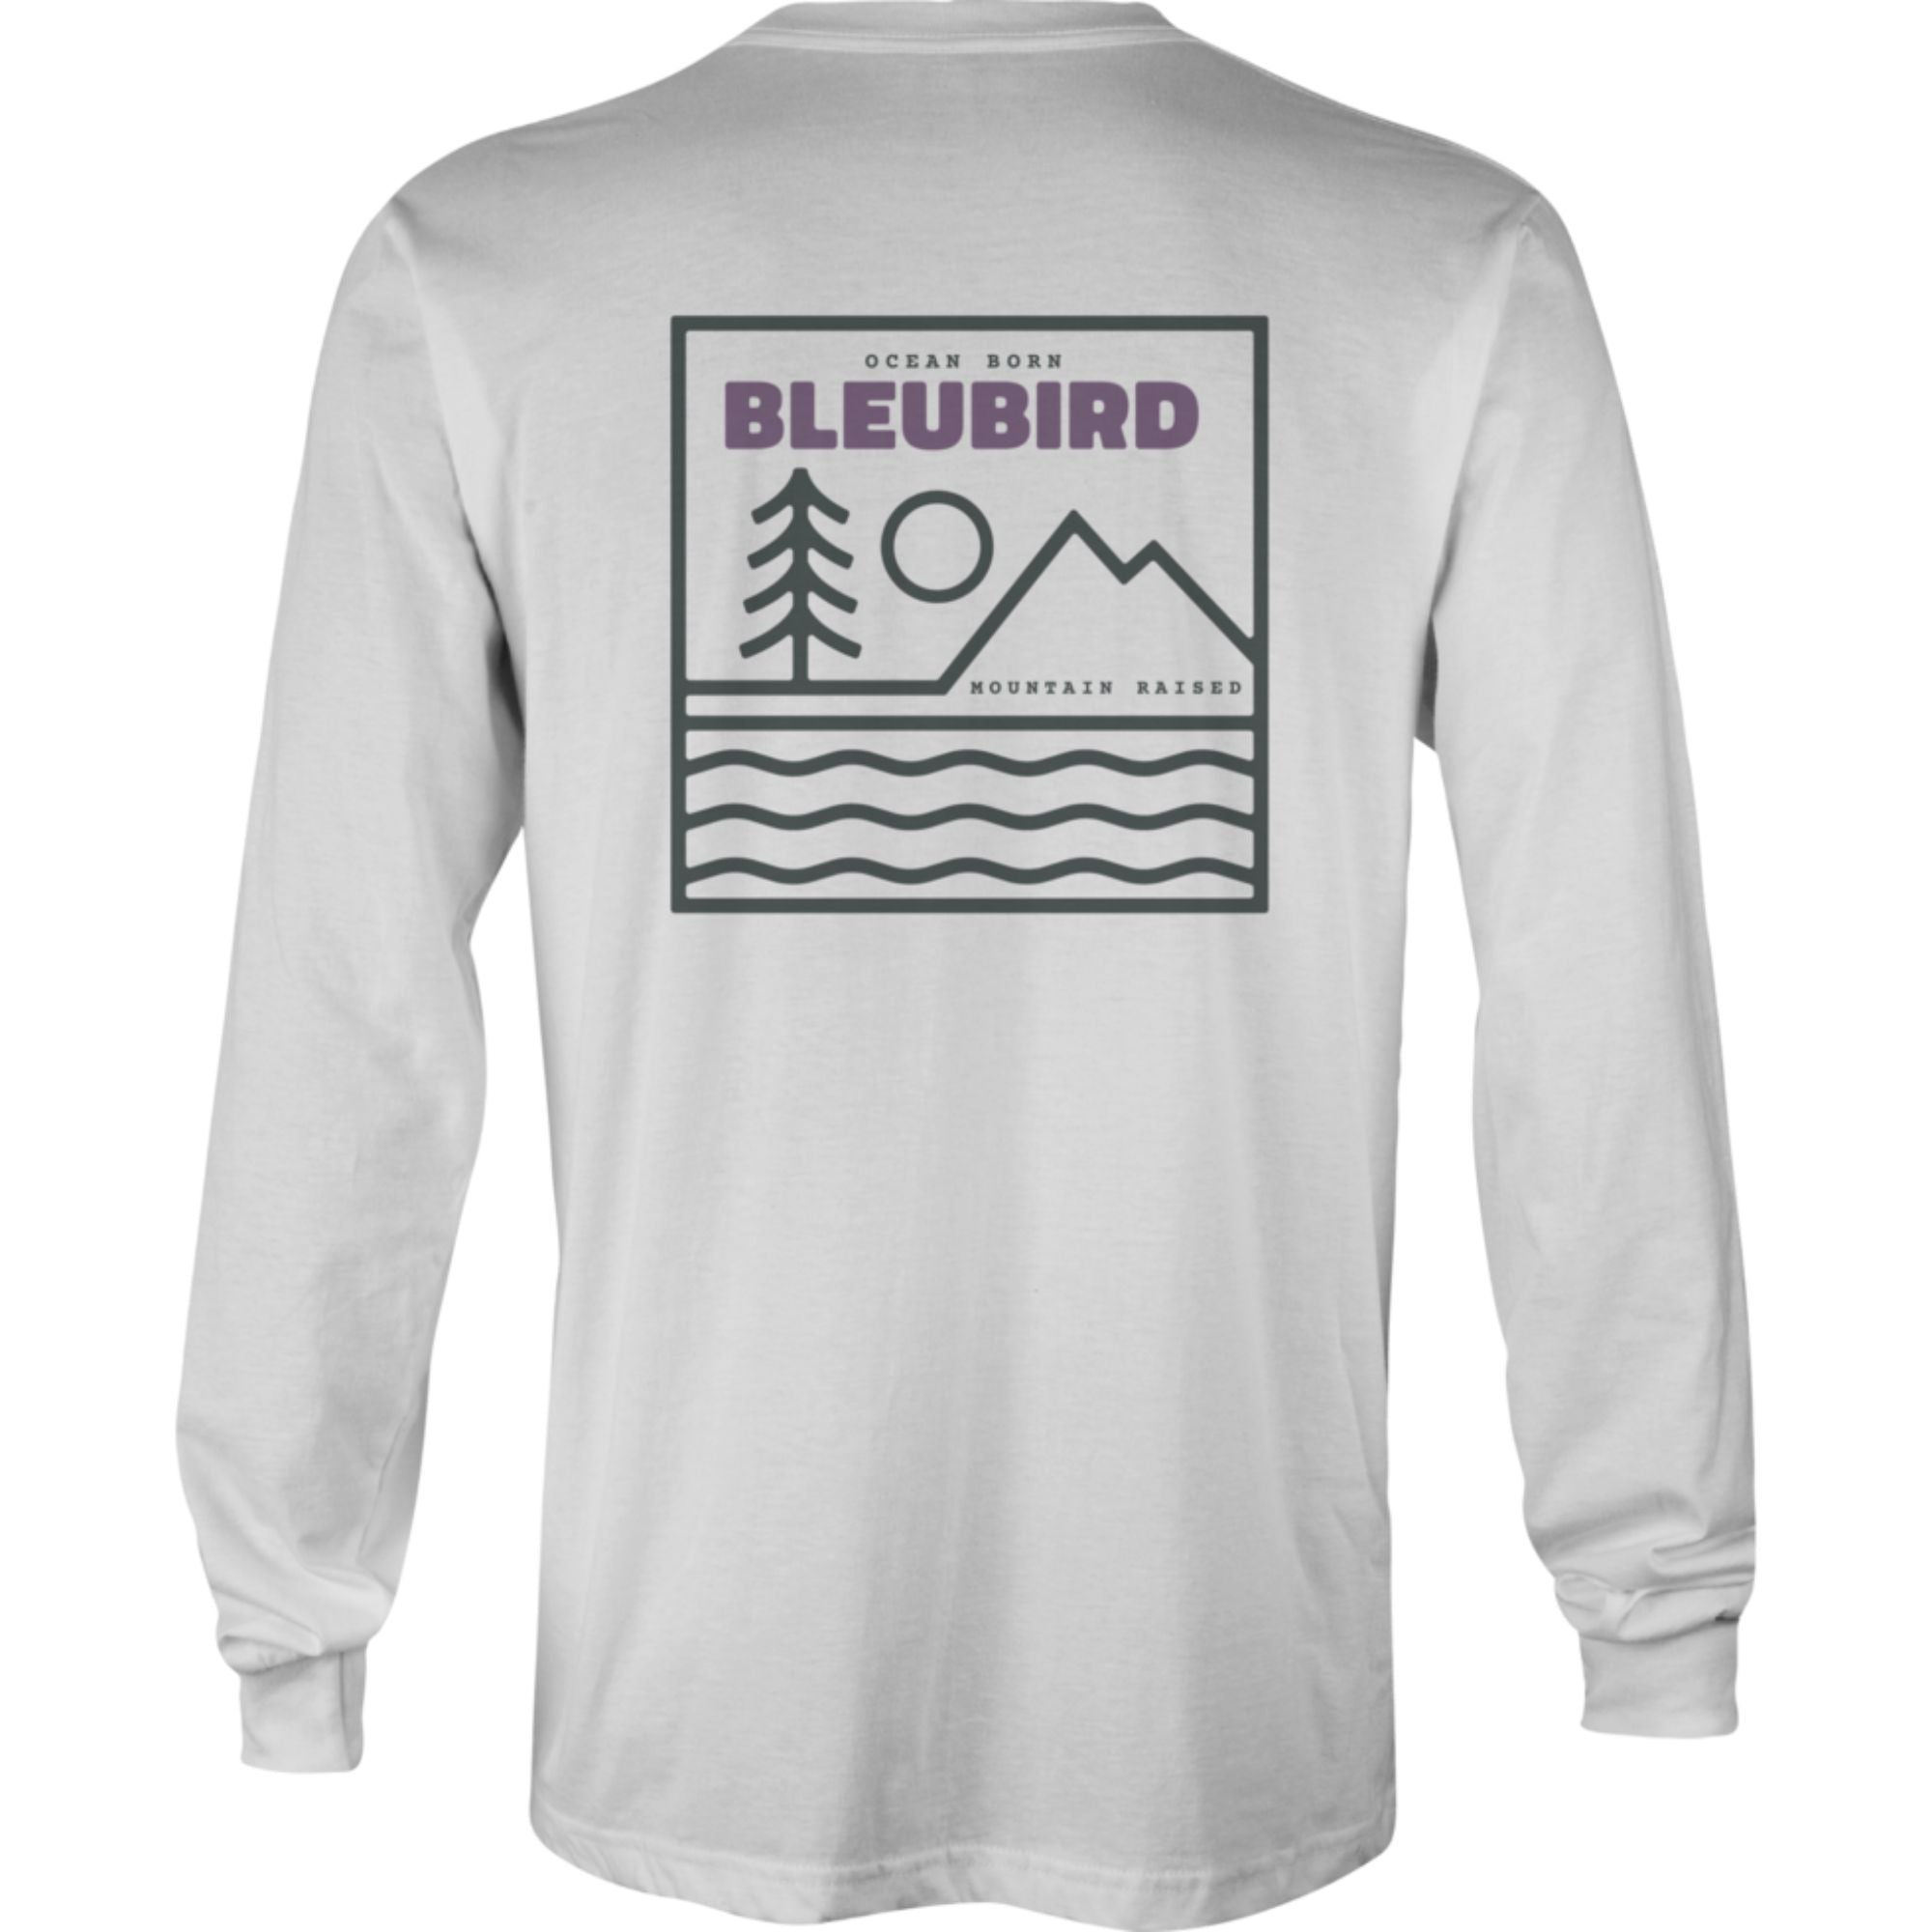 Bleubird Campout Long Sleeve Tee | Bleubird | Portwest - The Outdoor Shop